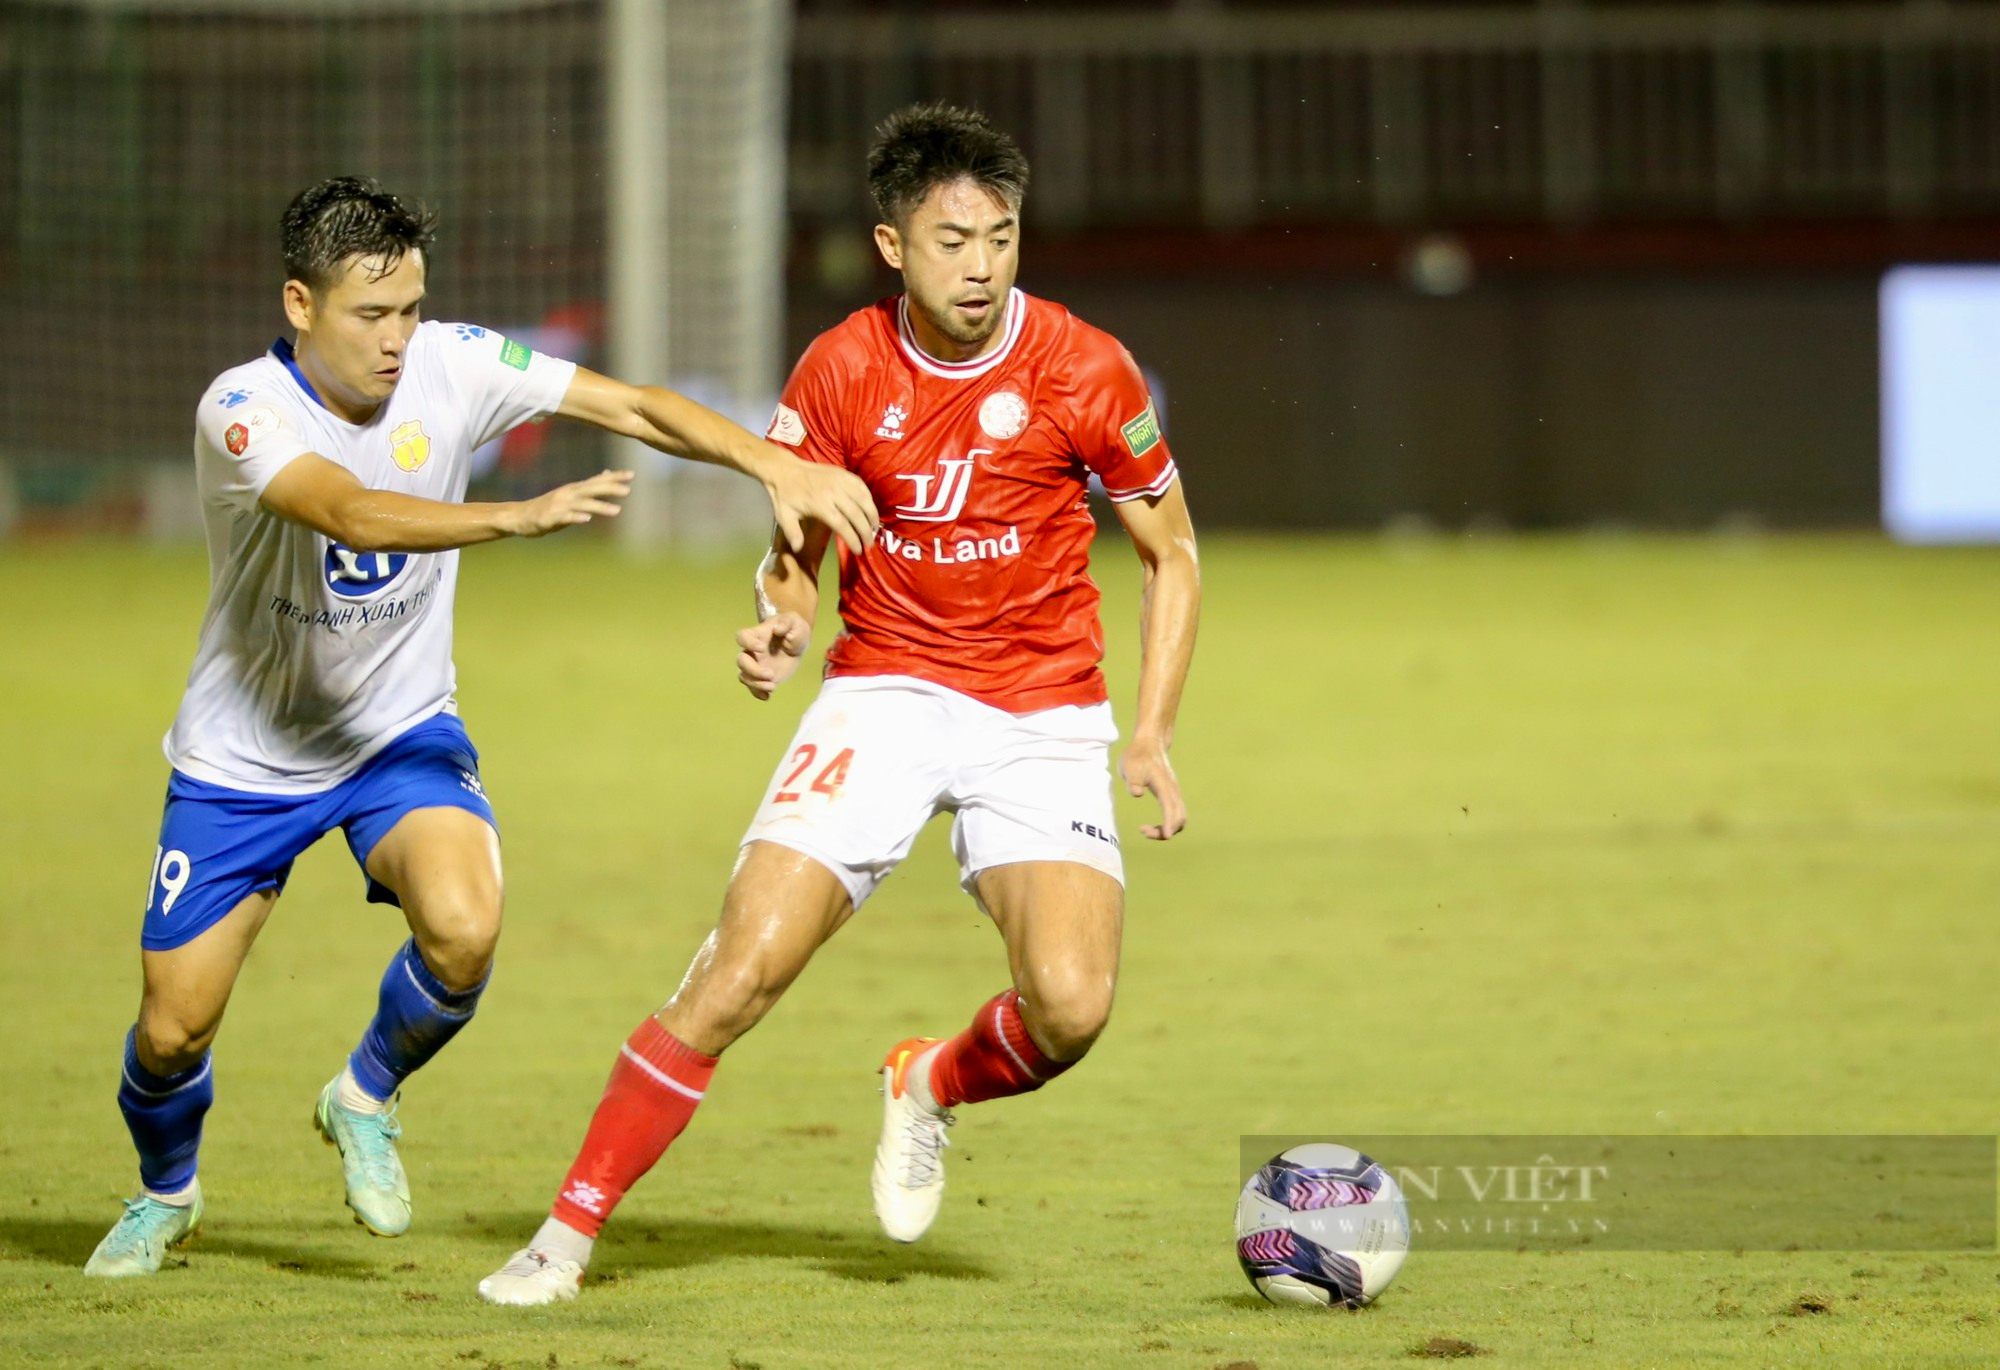 Lee Nguyễn bất lực, CLB TP.HCM bại trận trên sân nhà - Ảnh 4.